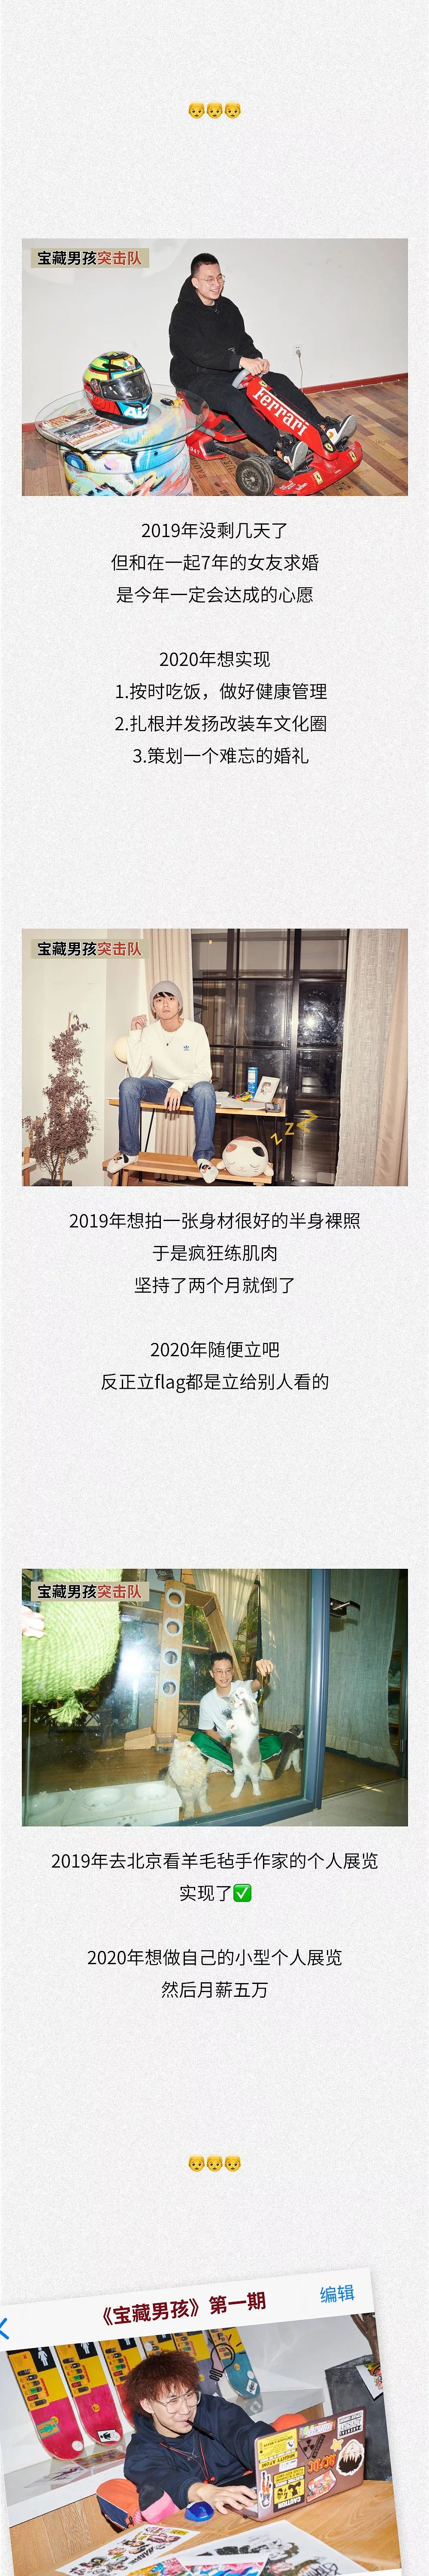 2019让人脸红心跳的宝藏男孩集锦 - 13